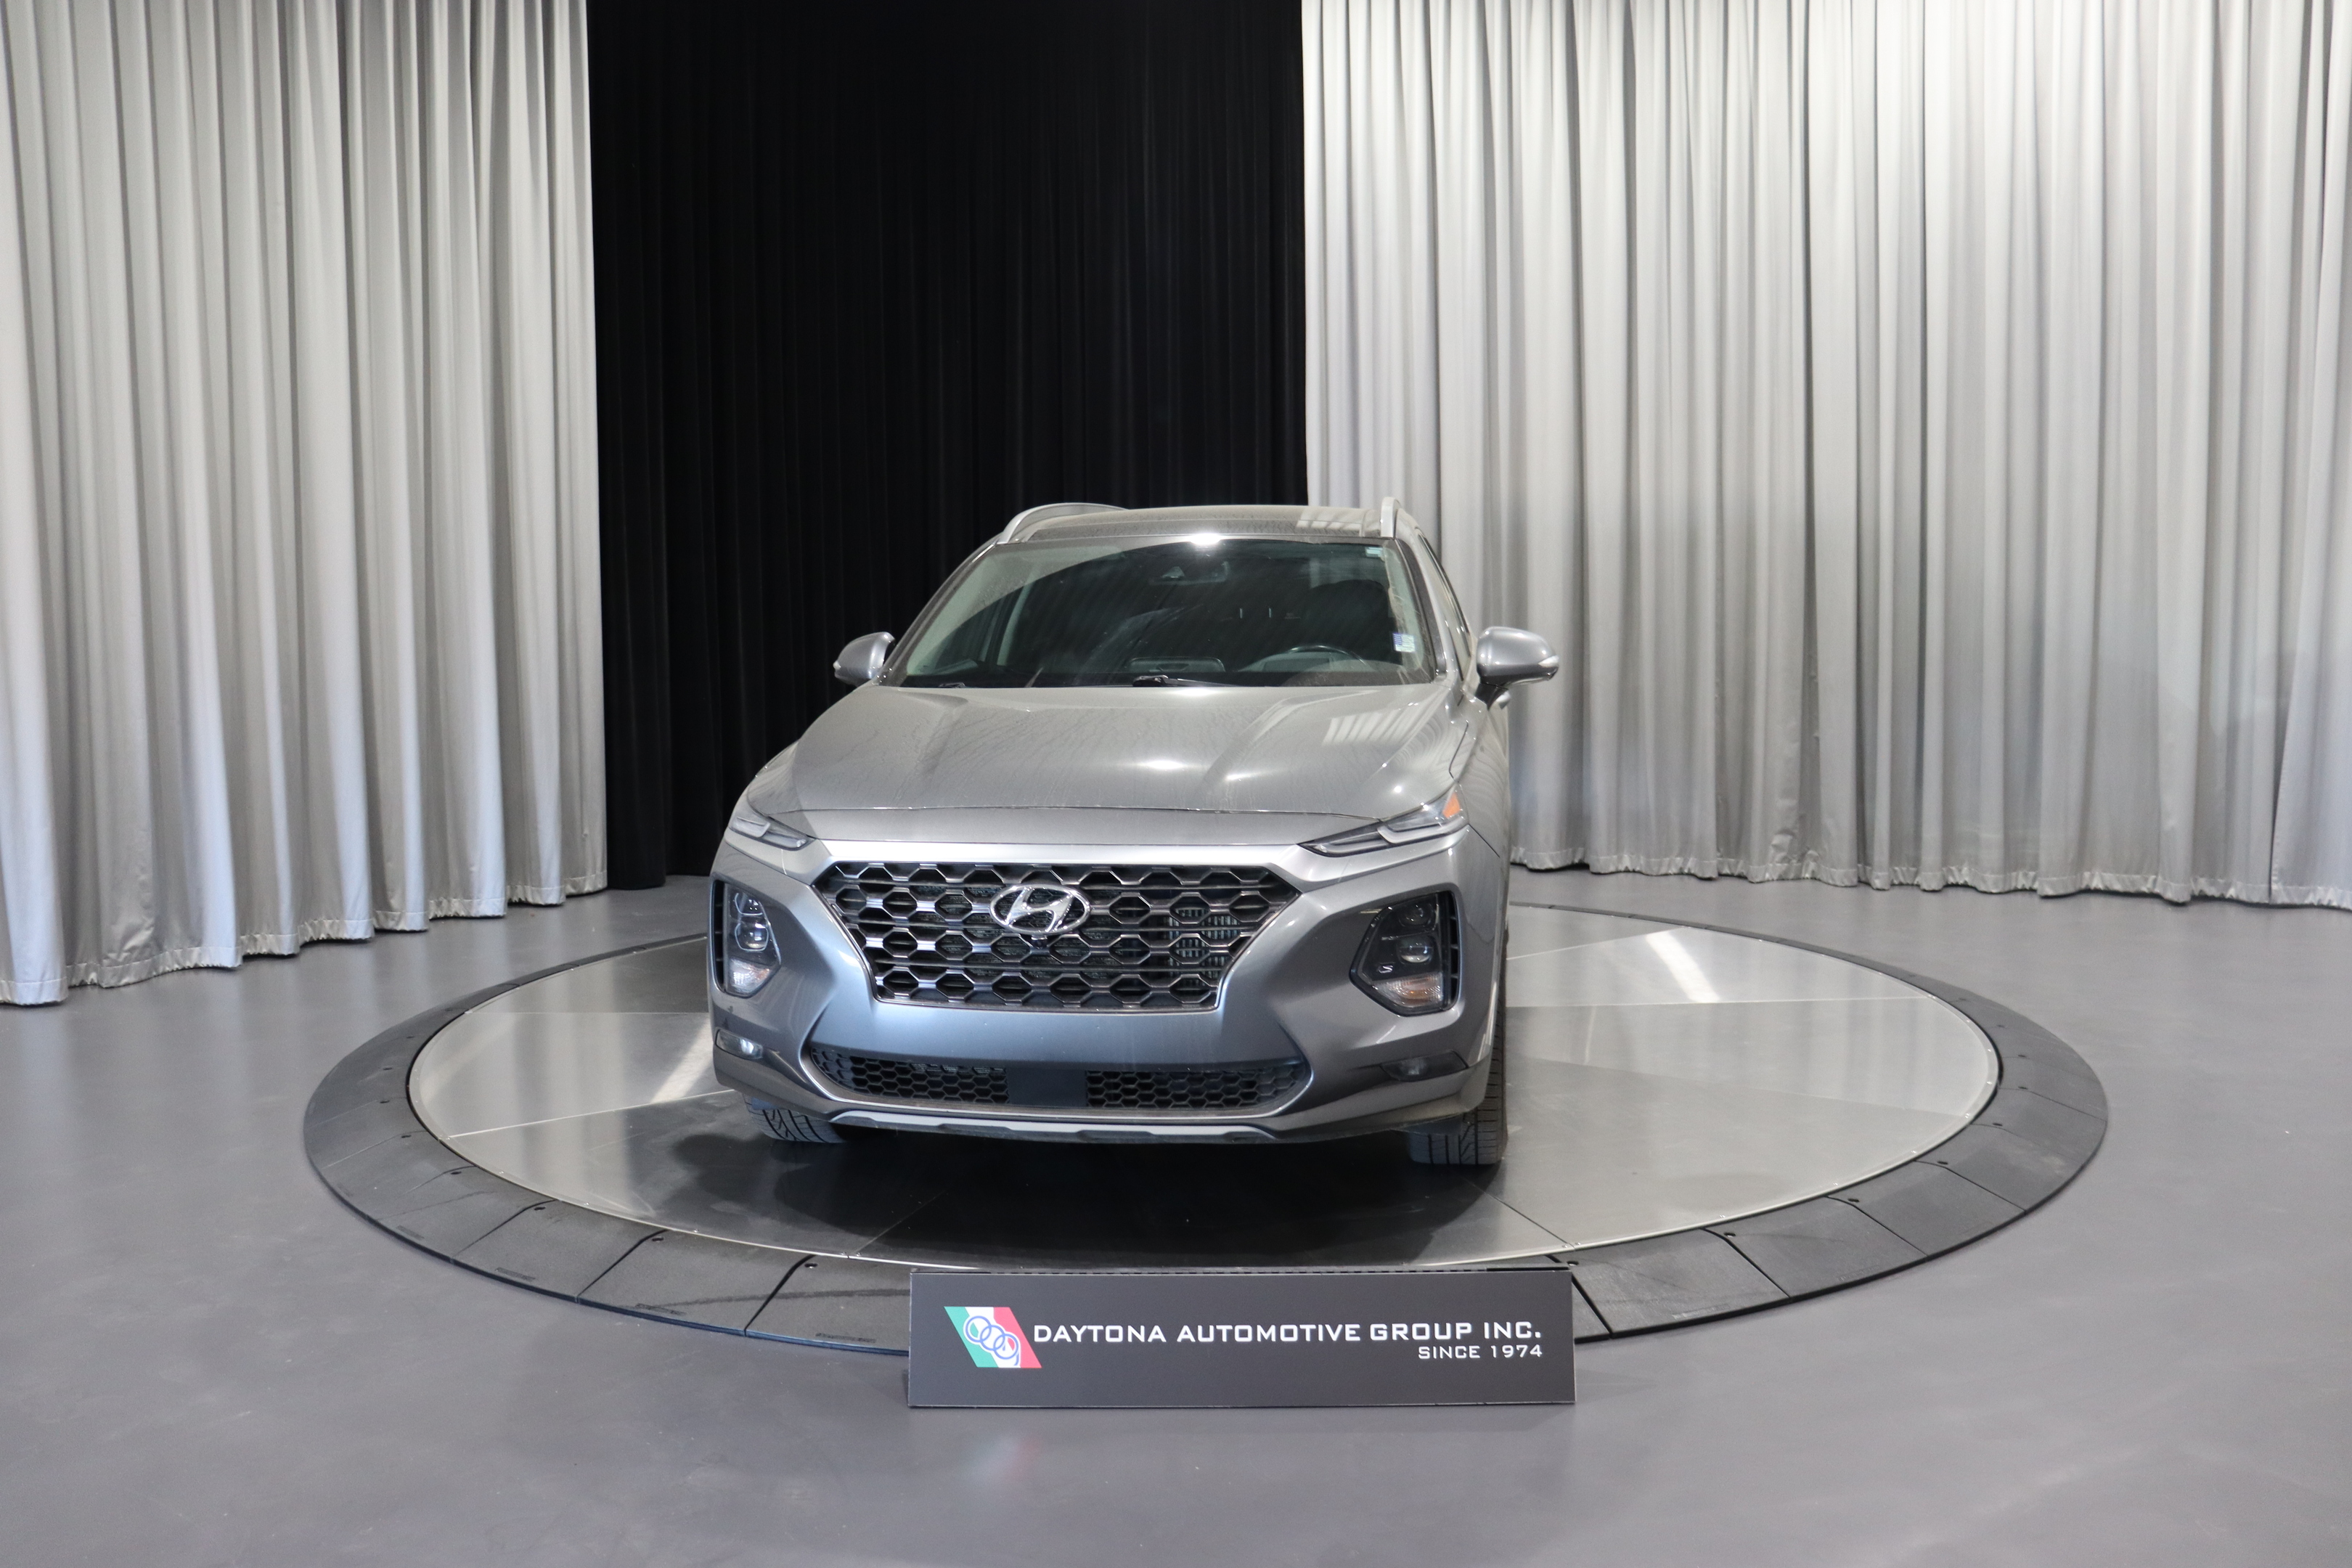 2019 Hyundai Santa Fe 2.0T Ultimate AWD